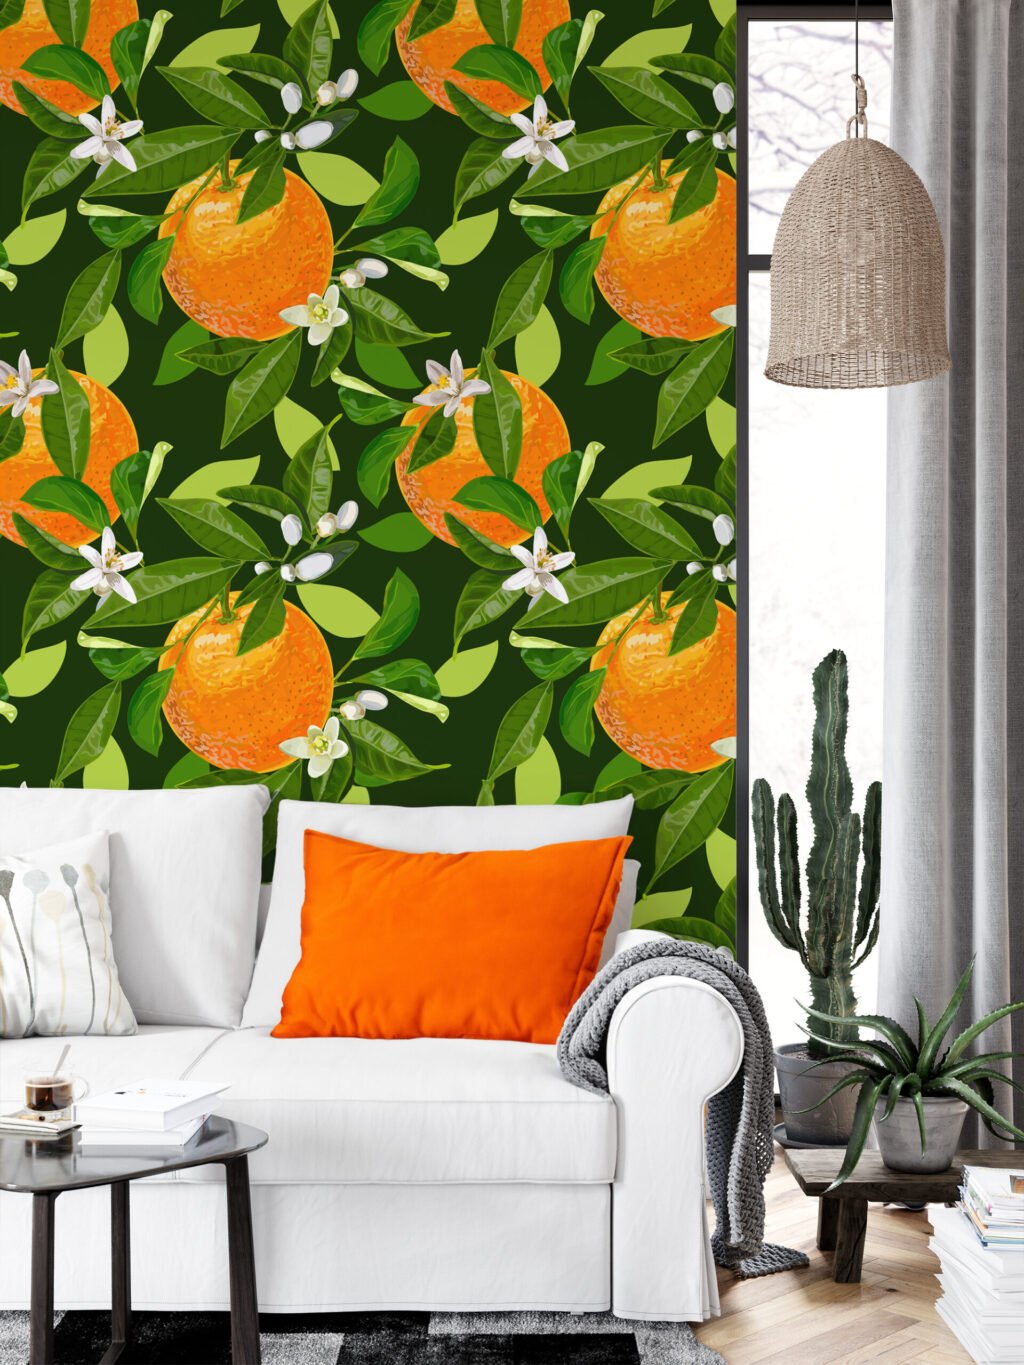 Portakal Desenli Duvar Kağıdı, Tropikal Taze Narenciye 3D Duvar Posteri Tropikal Duvar Kağıtları 5